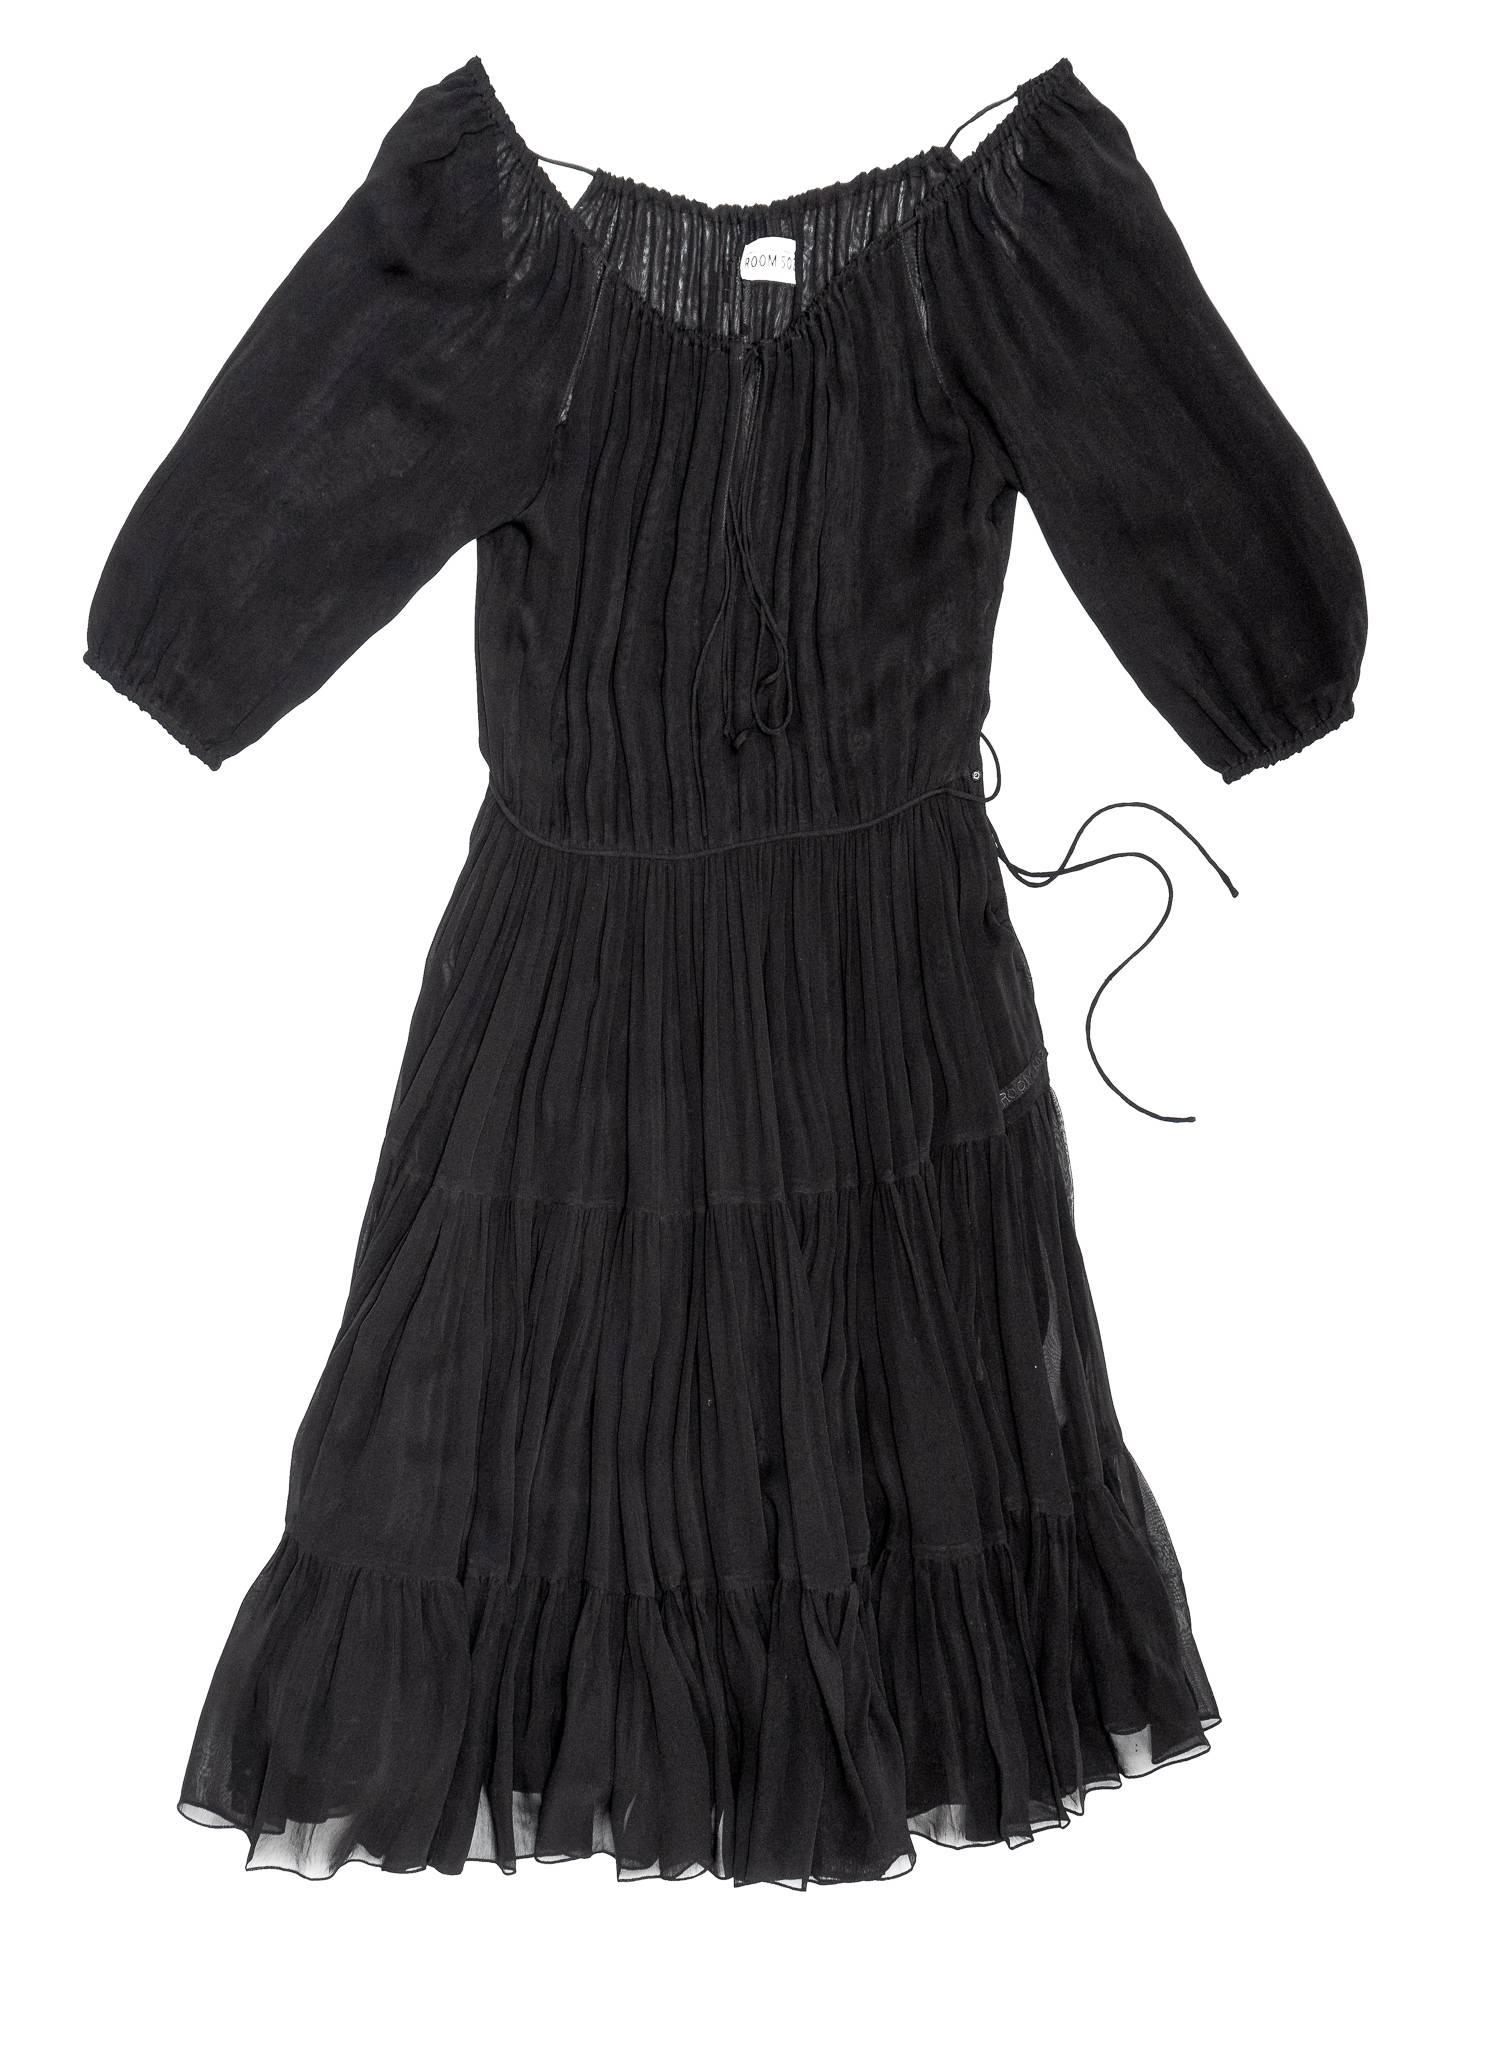 MICHELLE DRESS MODEL 19 - BLACK - Room 502